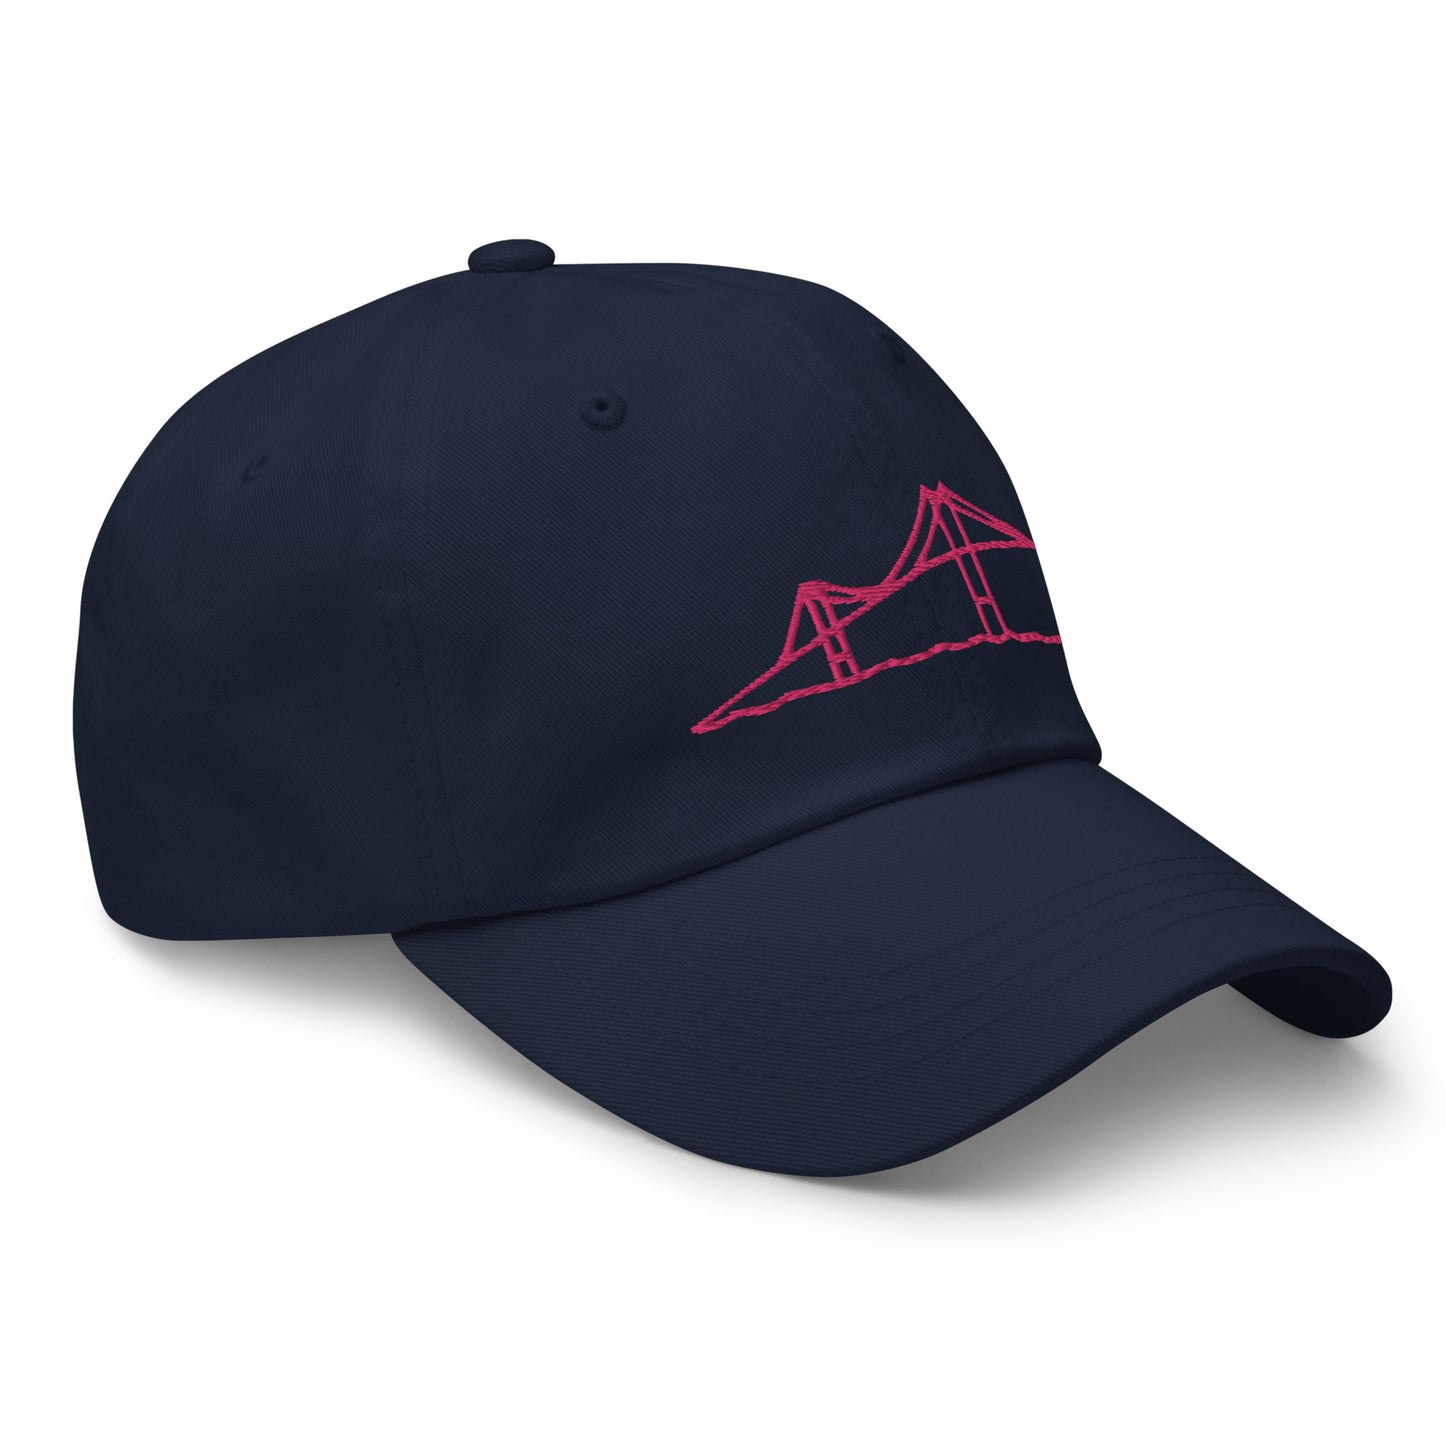 Newport Bridge Dad Hat - Pink on Navy